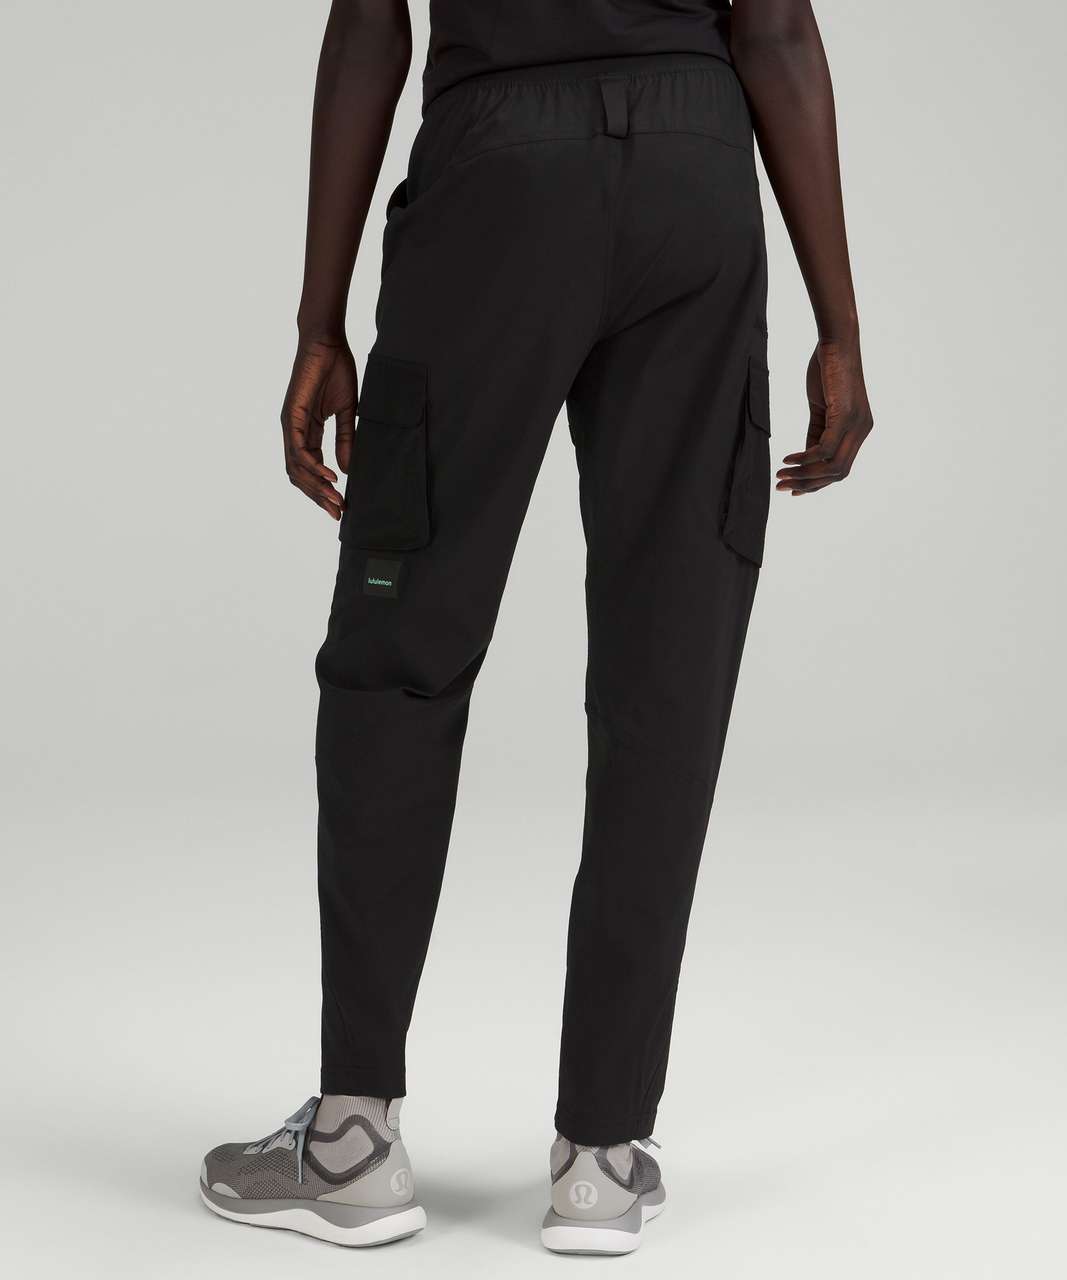 Nike Dance woven multi pocket cargo trousers in black